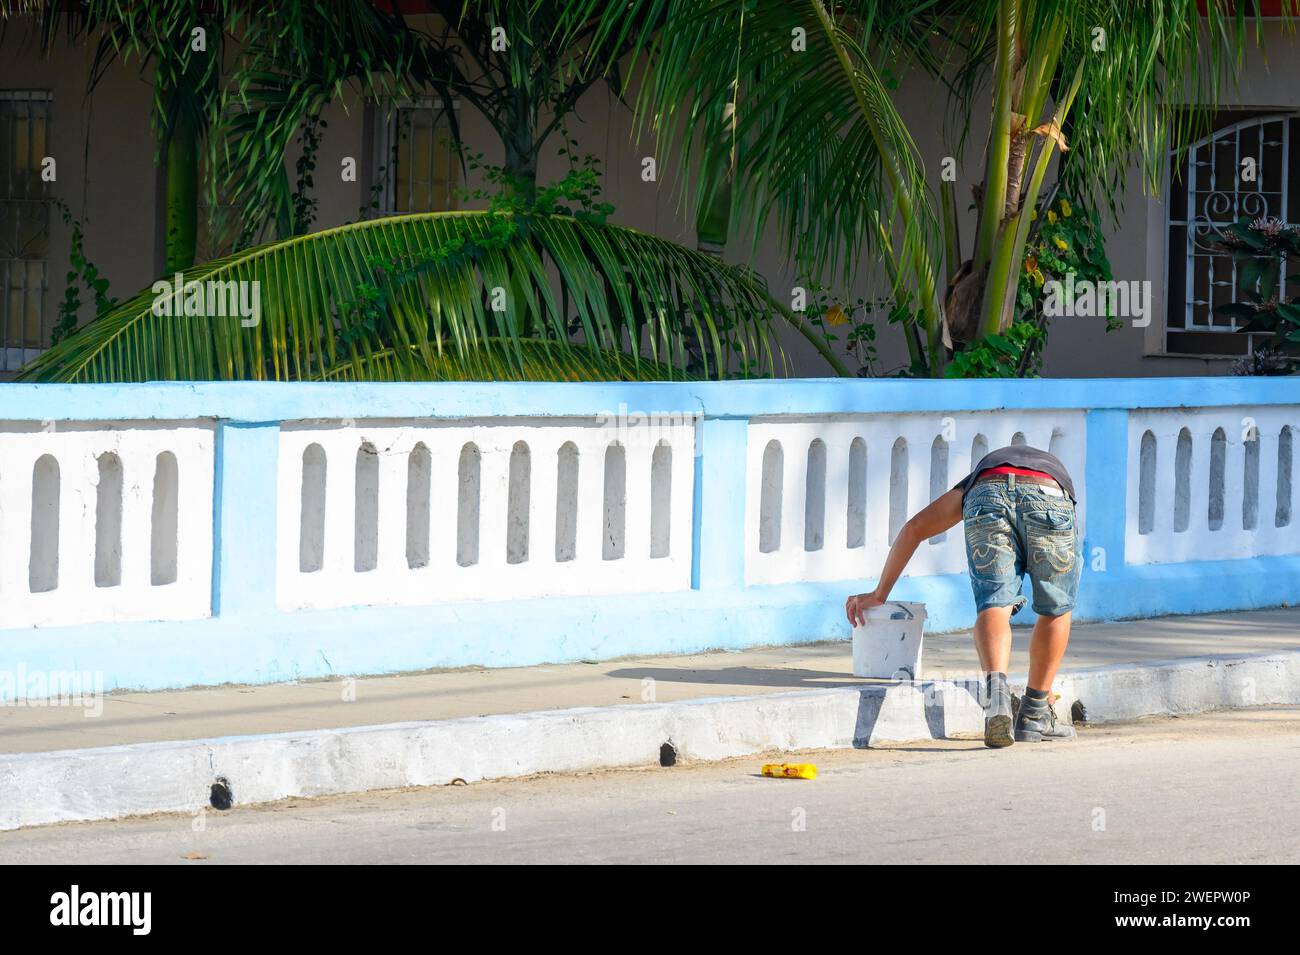 Man brush painting sidewalk curb, Santa Clara, Cuba Stock Photo